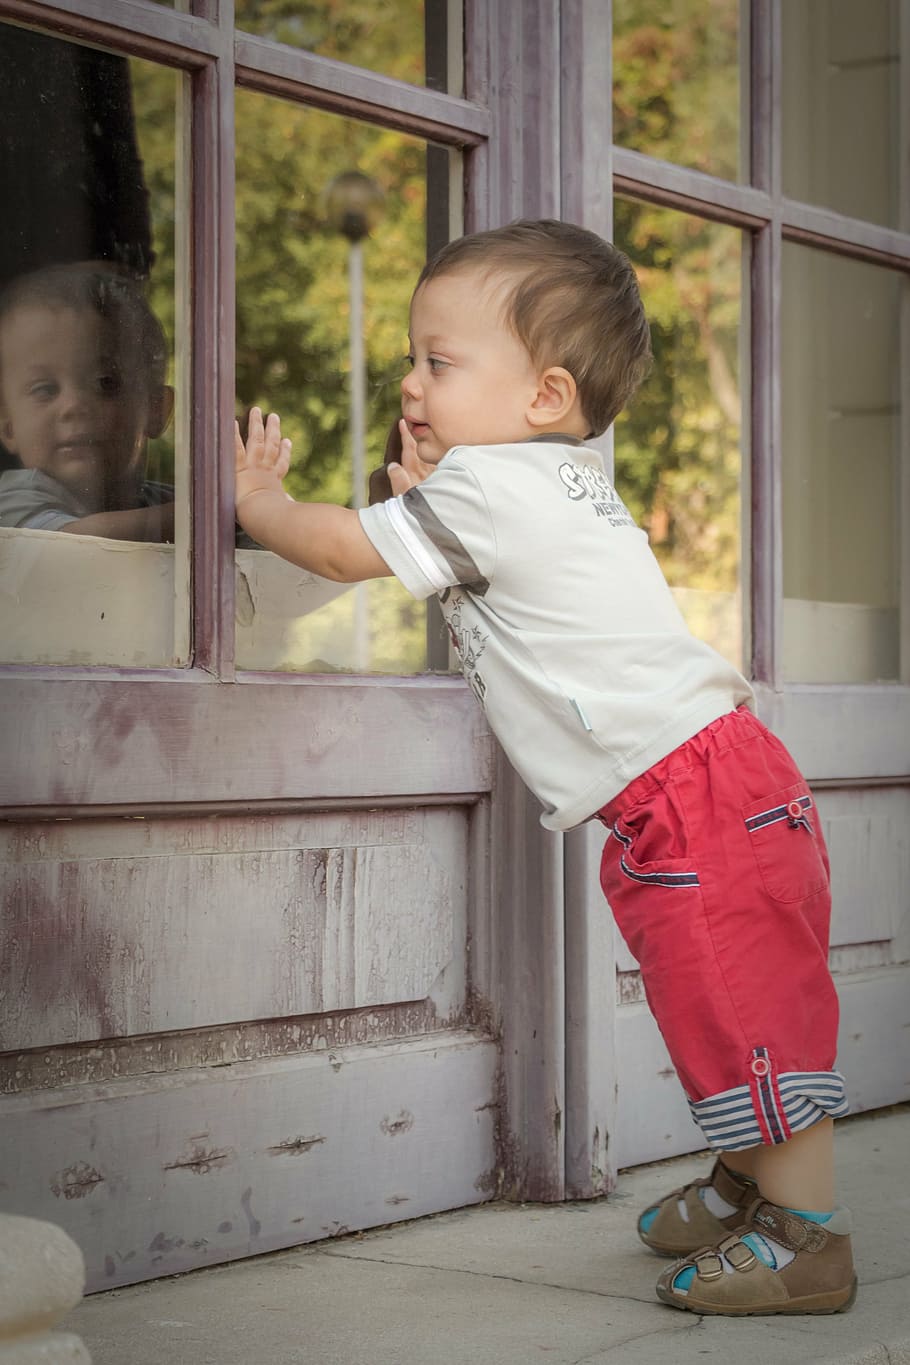 niño, cara, ventana de vidrio ahumado, bebé, lindo, juegos, niño pequeño, imagen de espejo, reflejo, ventana